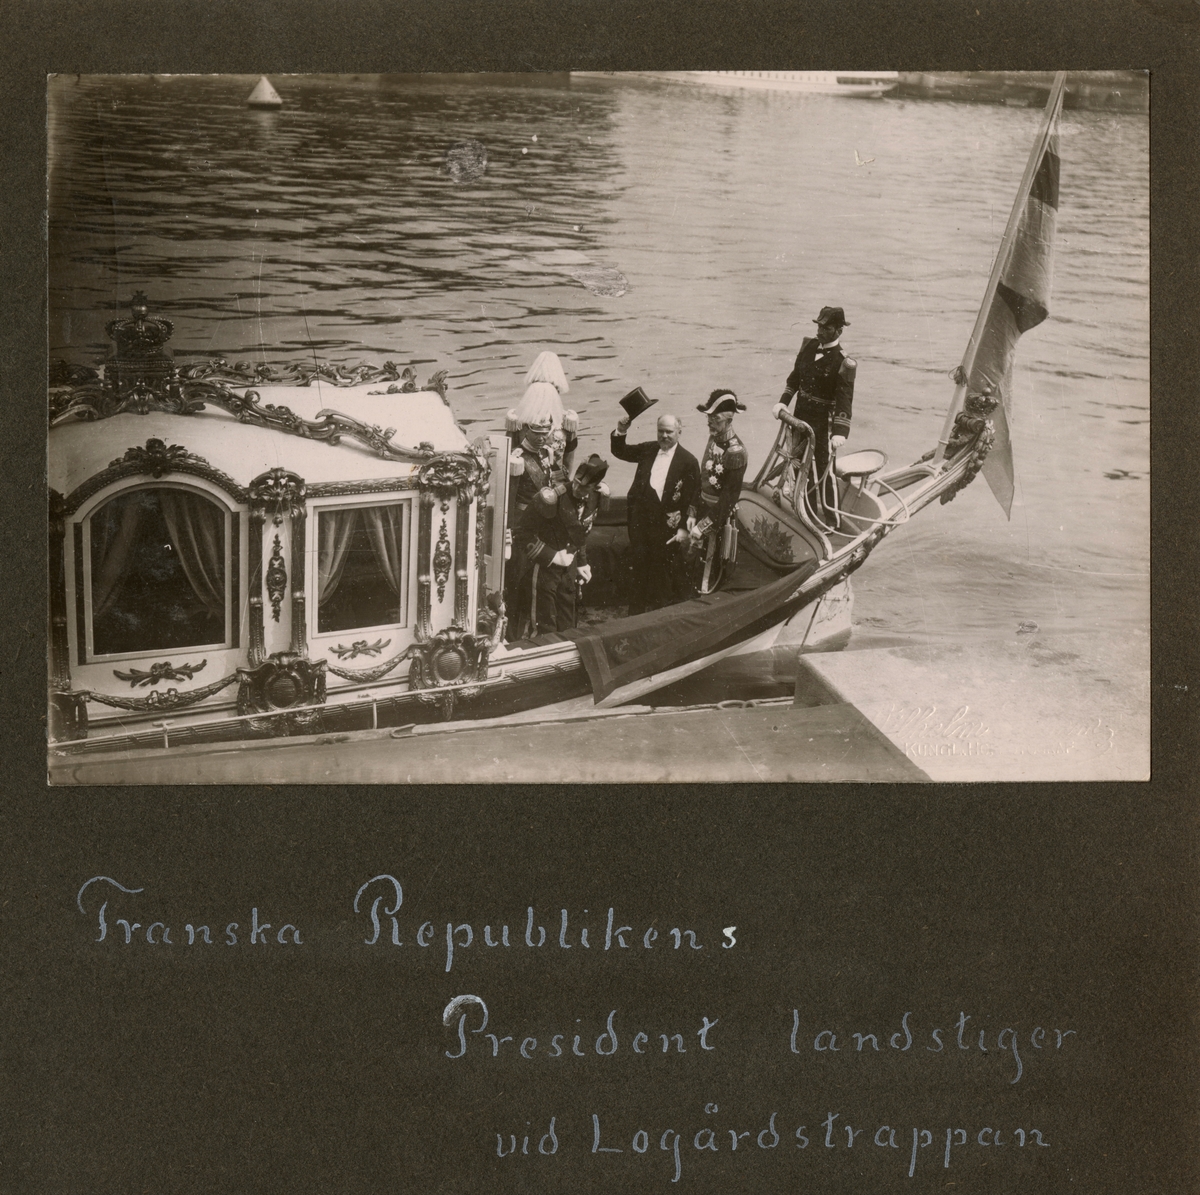 Text i fotoalbum: ” Franska Republikens President landstiger vid Logårdstrappan.”